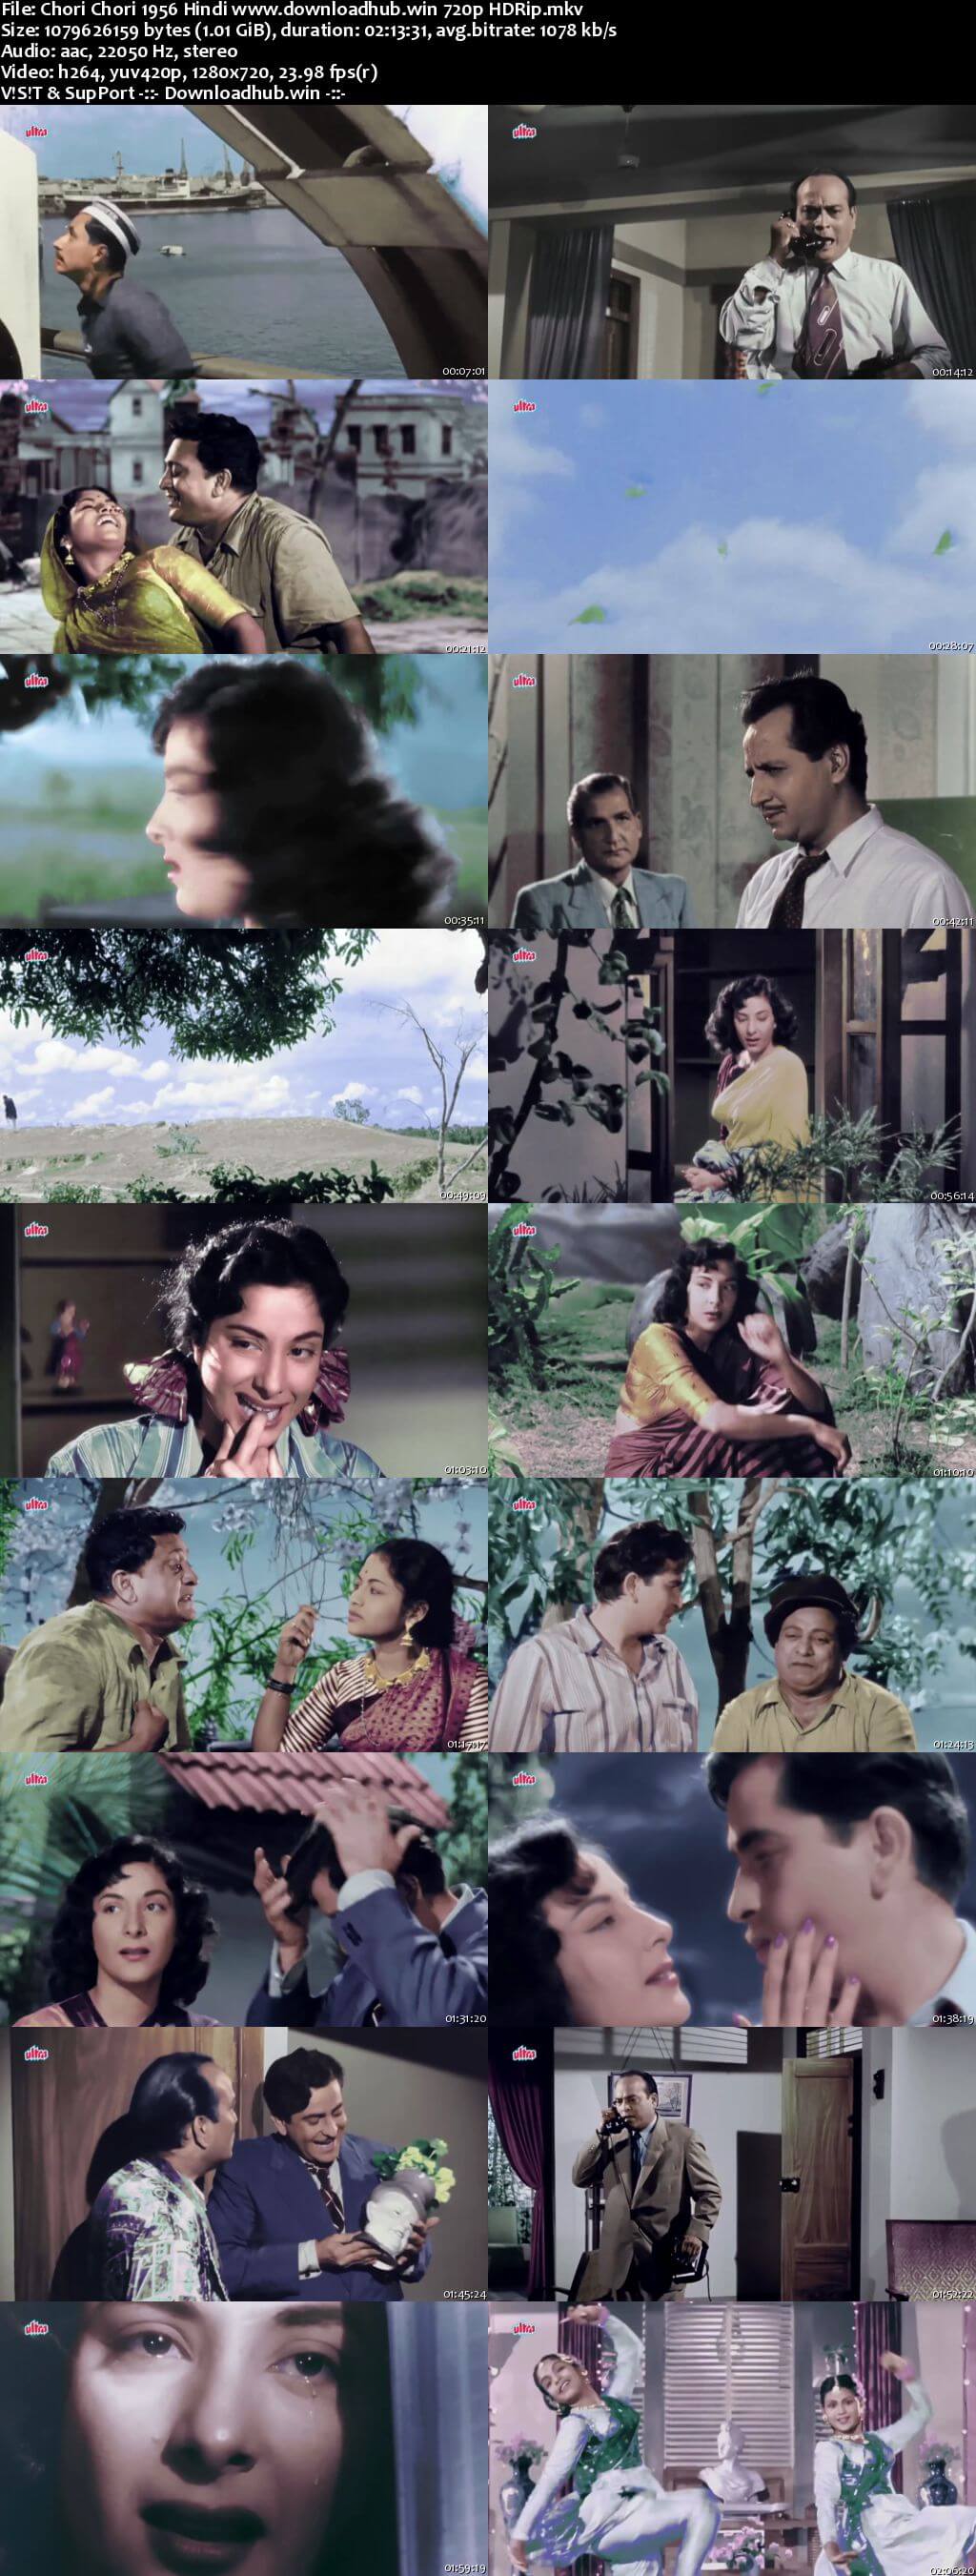 Chori Chori 1956 Hindi 720p HDRip x264